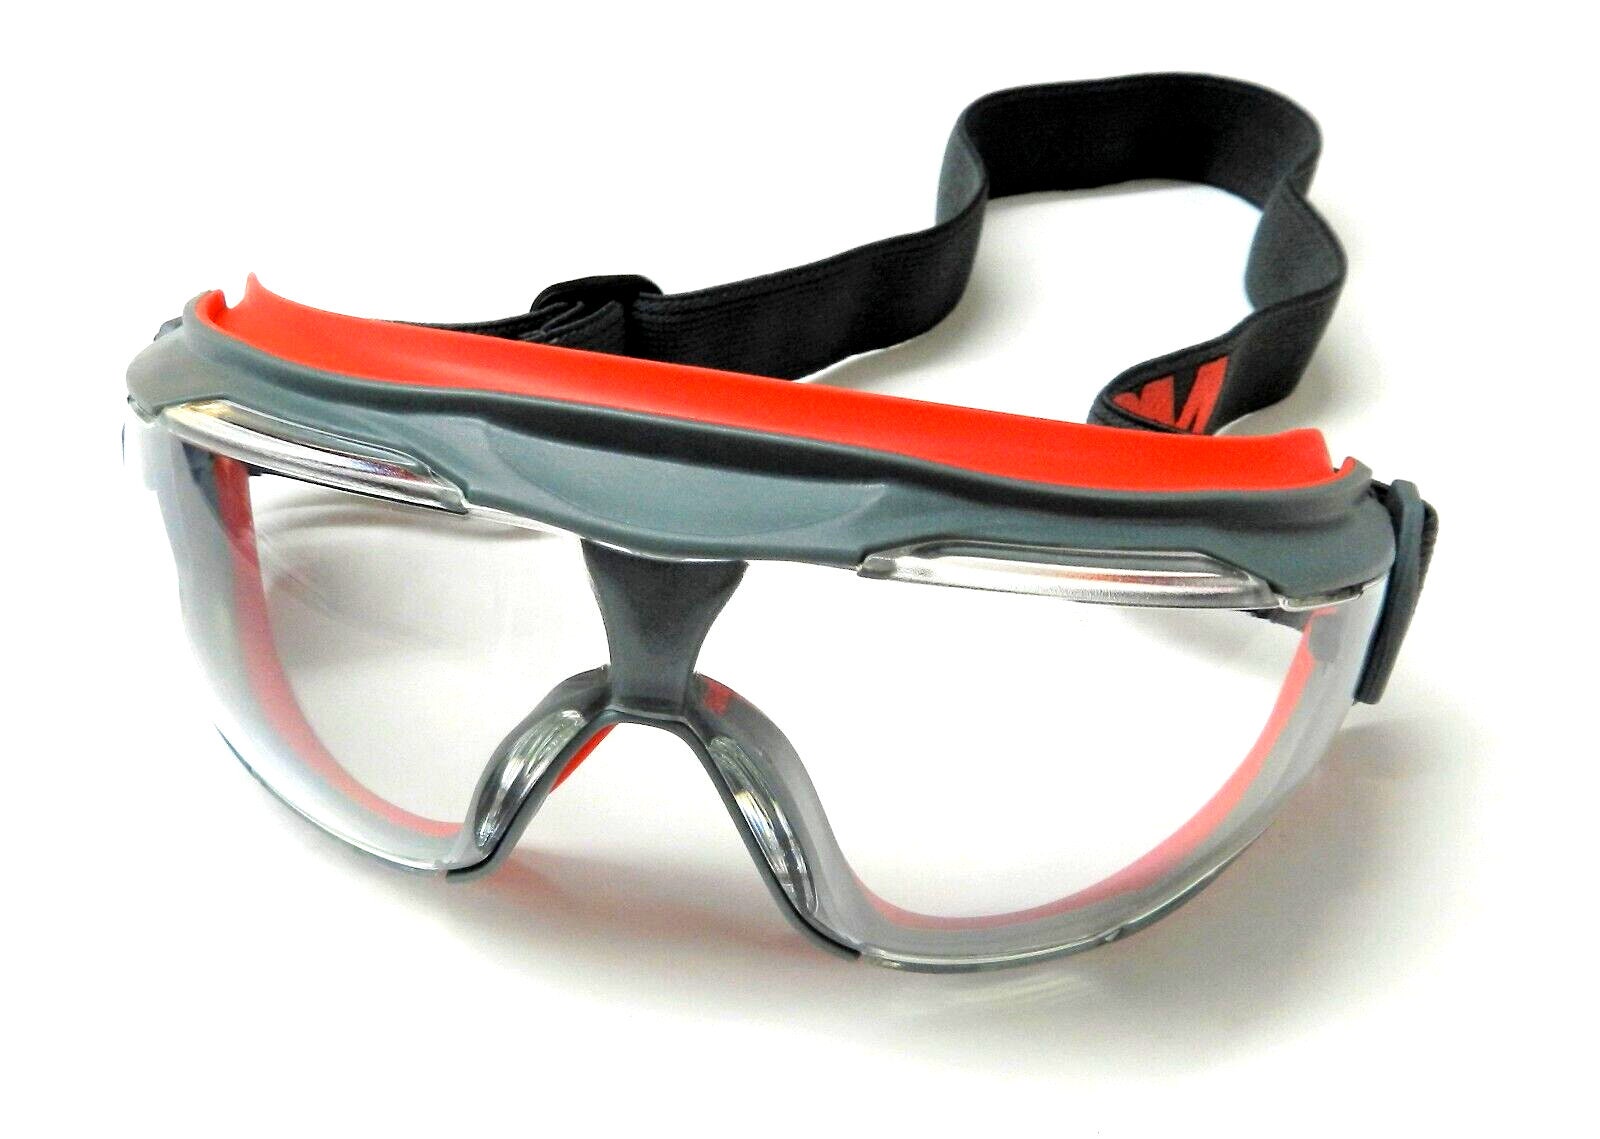 Lunettes-masques de sécurité 3M™ GoggleGear™ série 2890